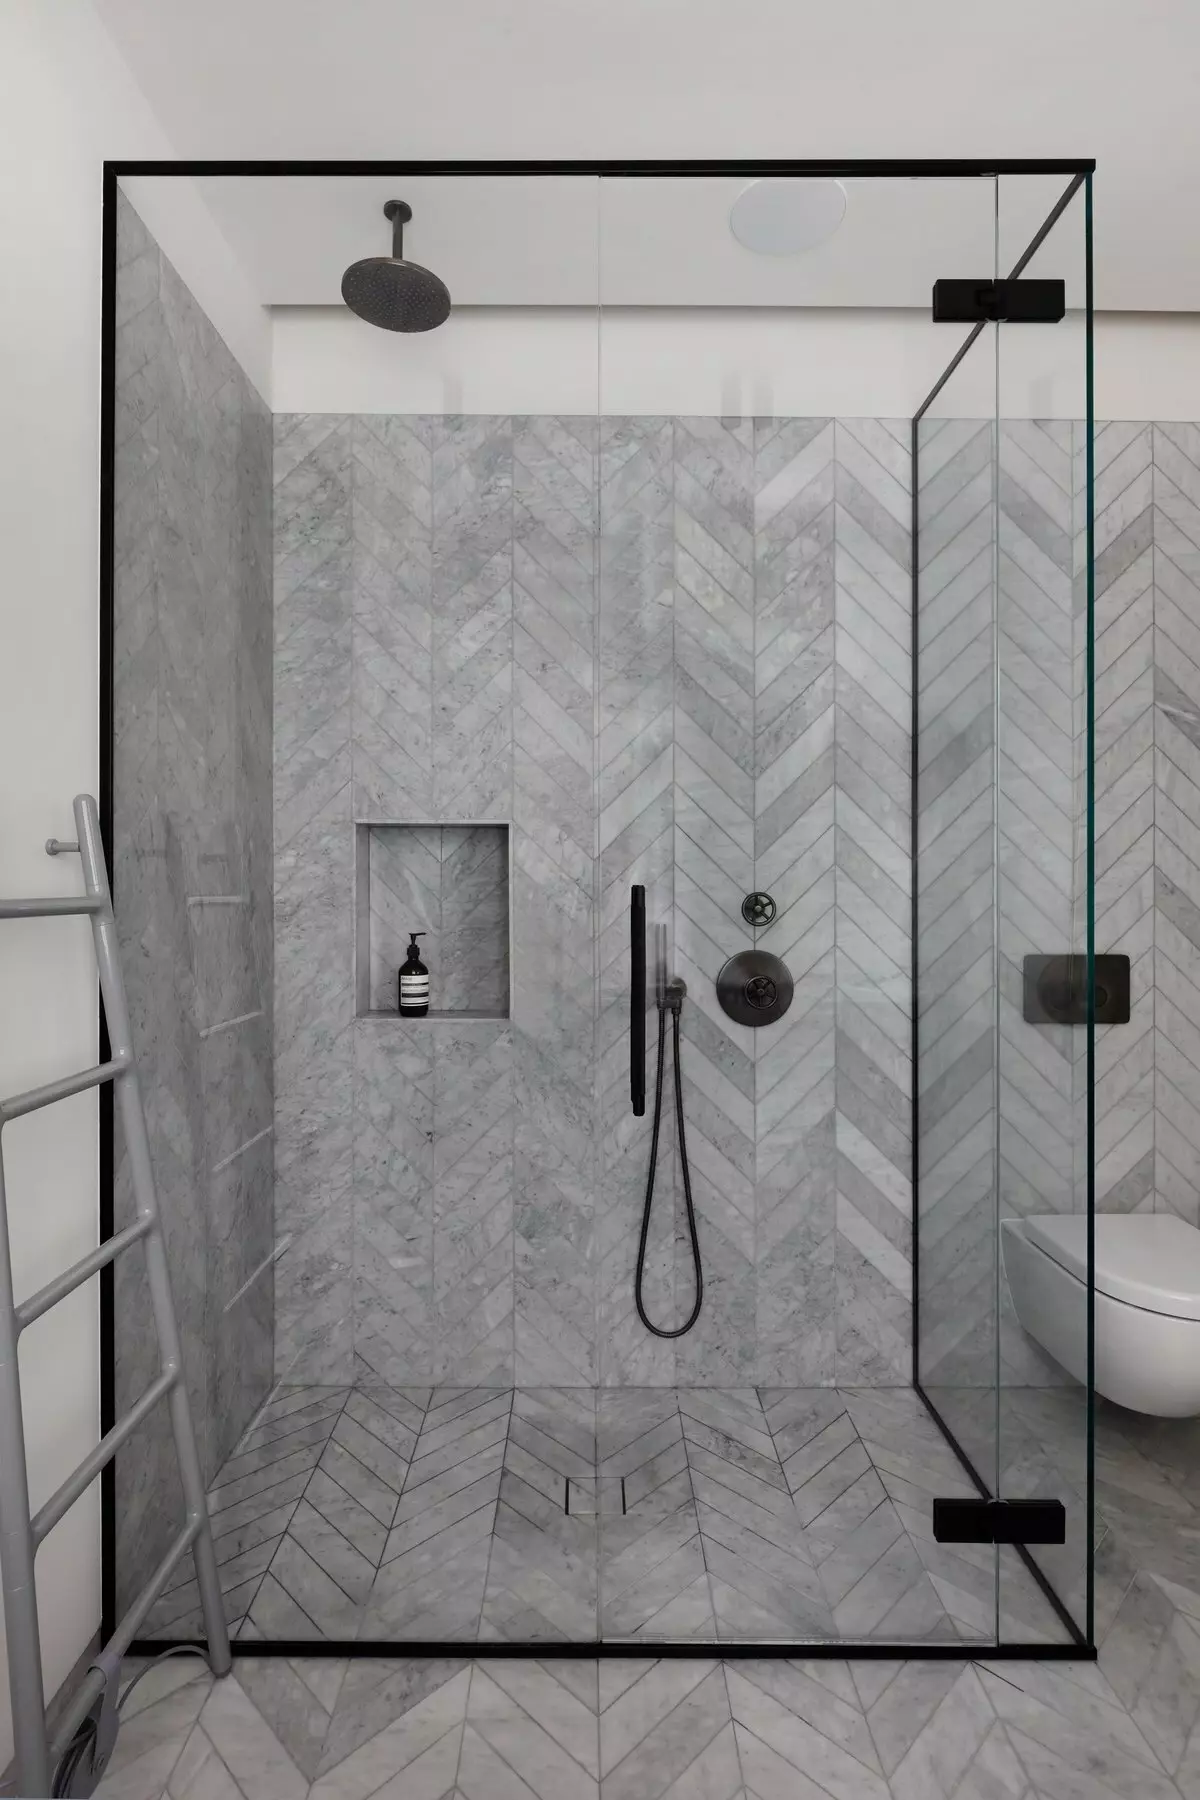 Ντους στο μπάνιο χωρίς καμπίνα (86 φωτογραφίες): επιλογές σχεδιασμού μπάνιου με ντους χωρίς παλέτες και πλακιδίων καμπίνες, έργα 21384_48